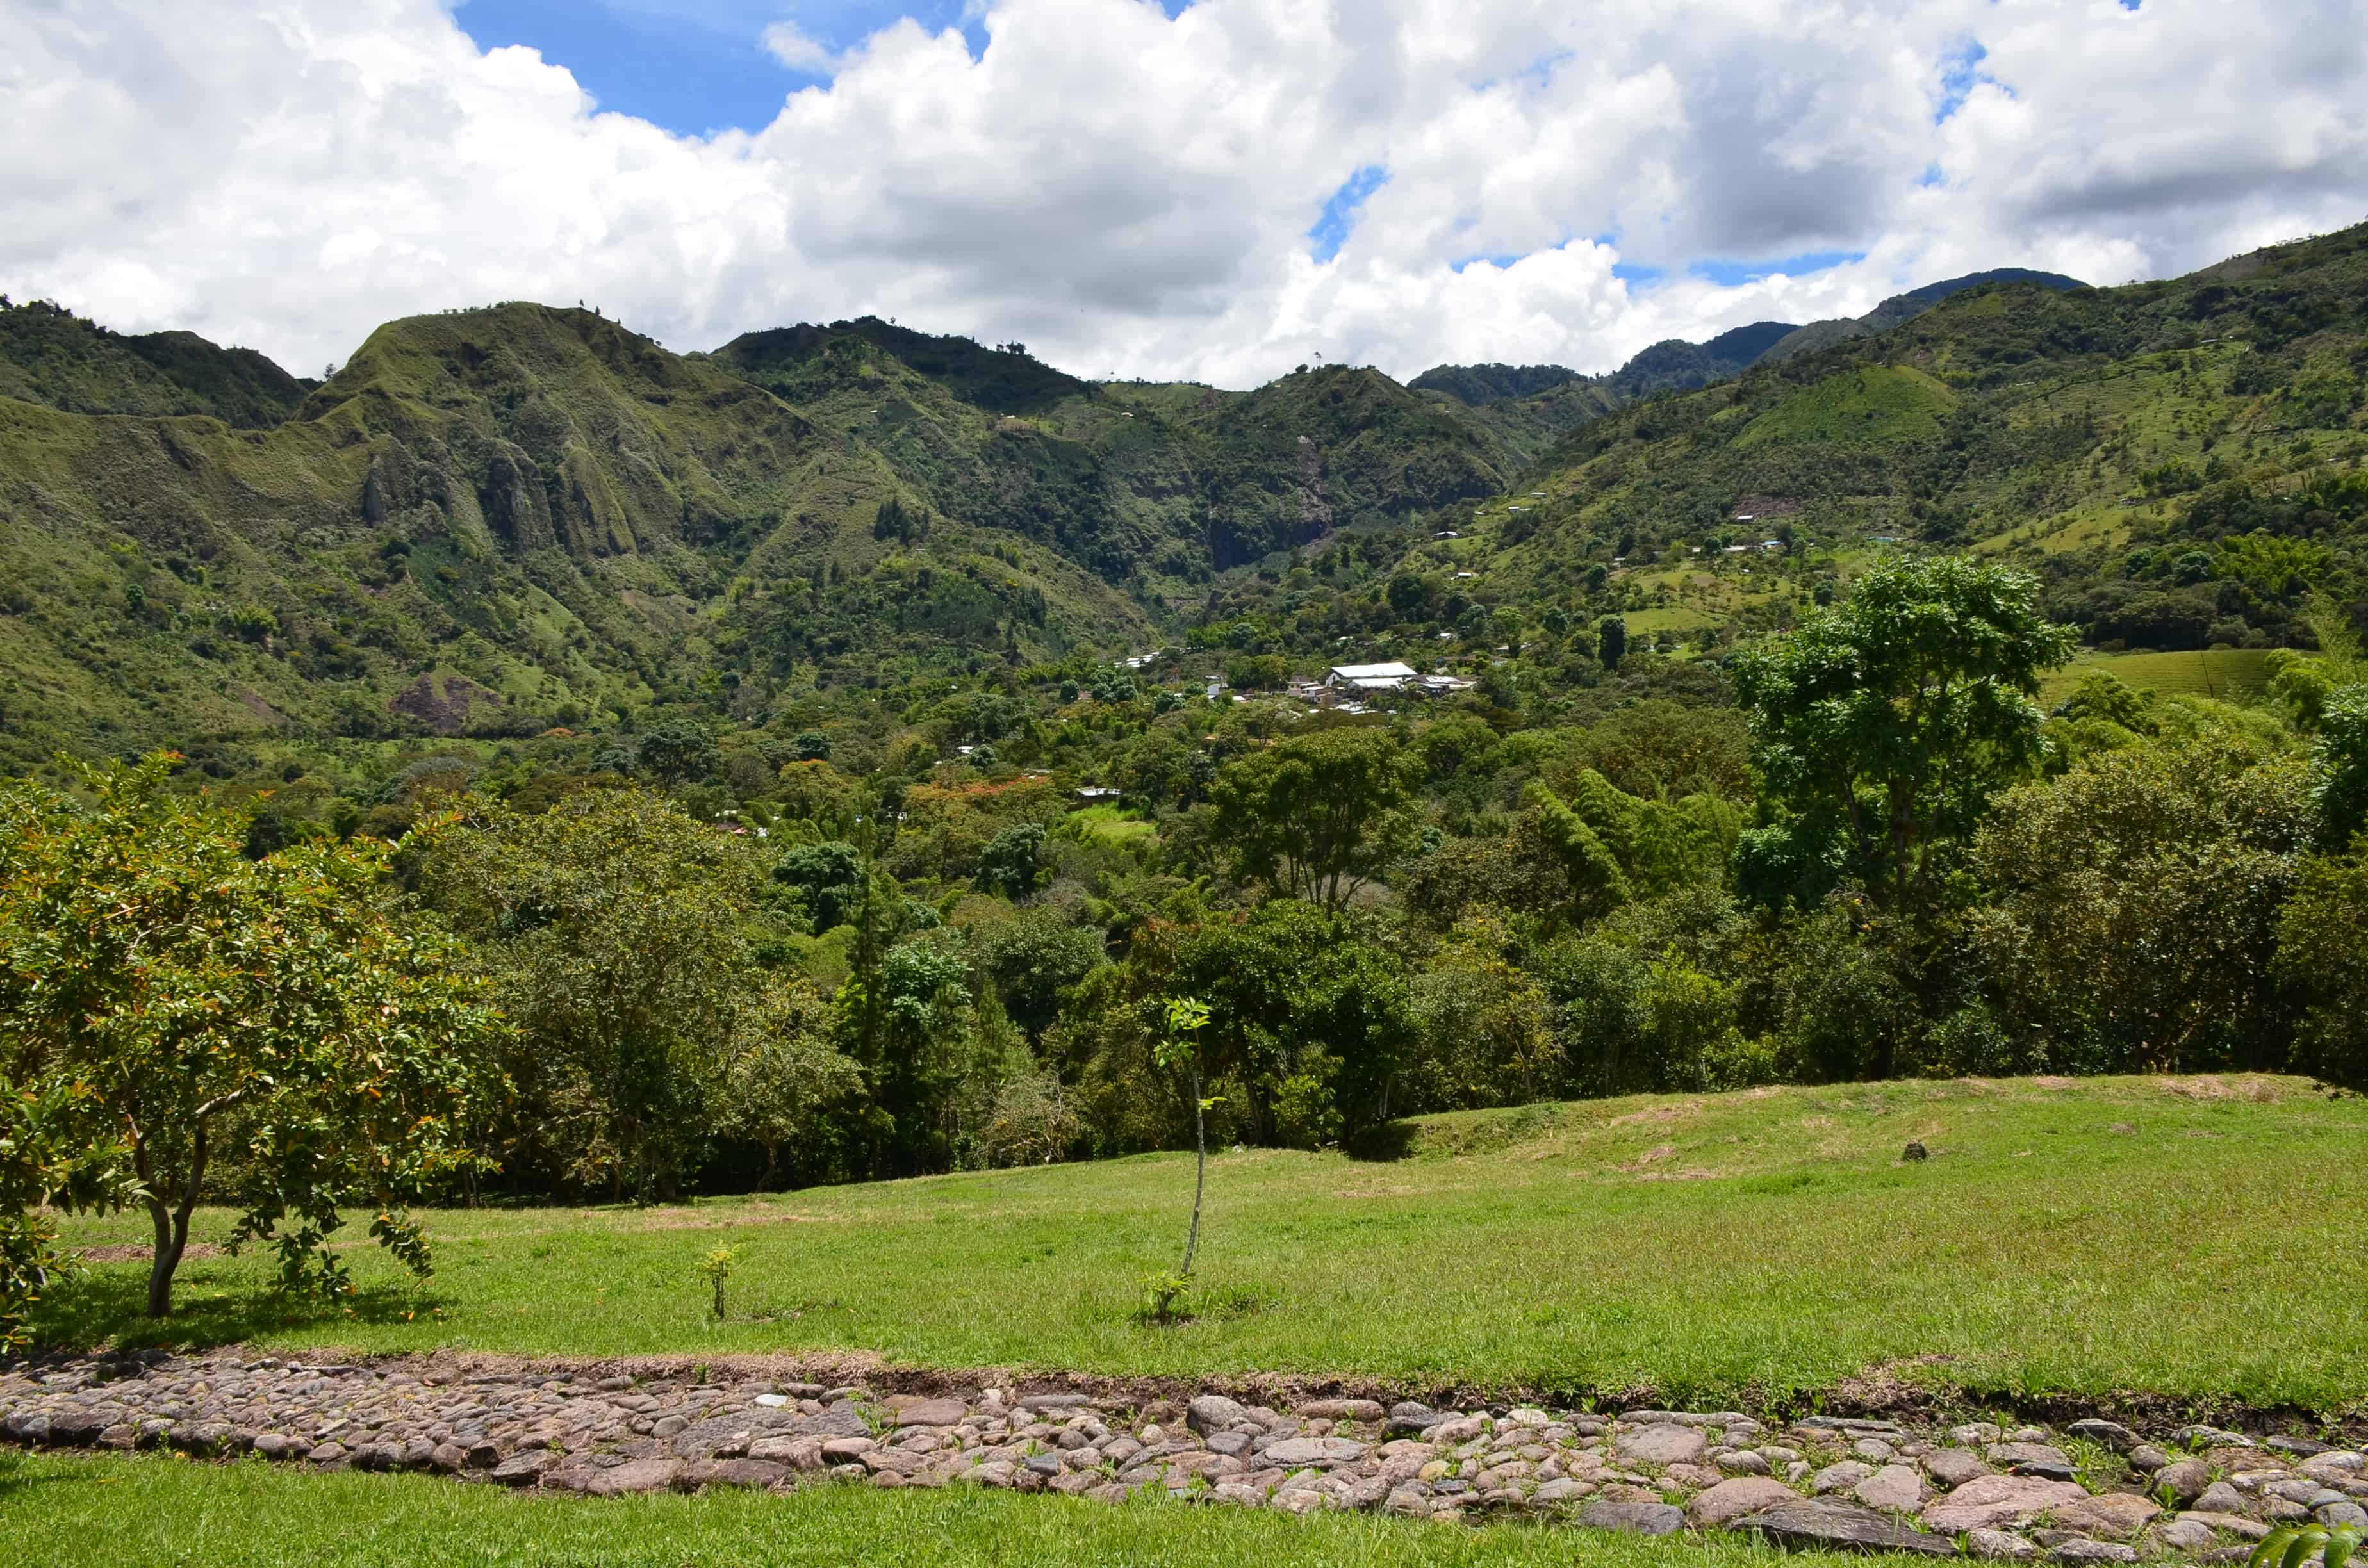 The view from El Tablón at Tierradentro, Cauca, Colombia